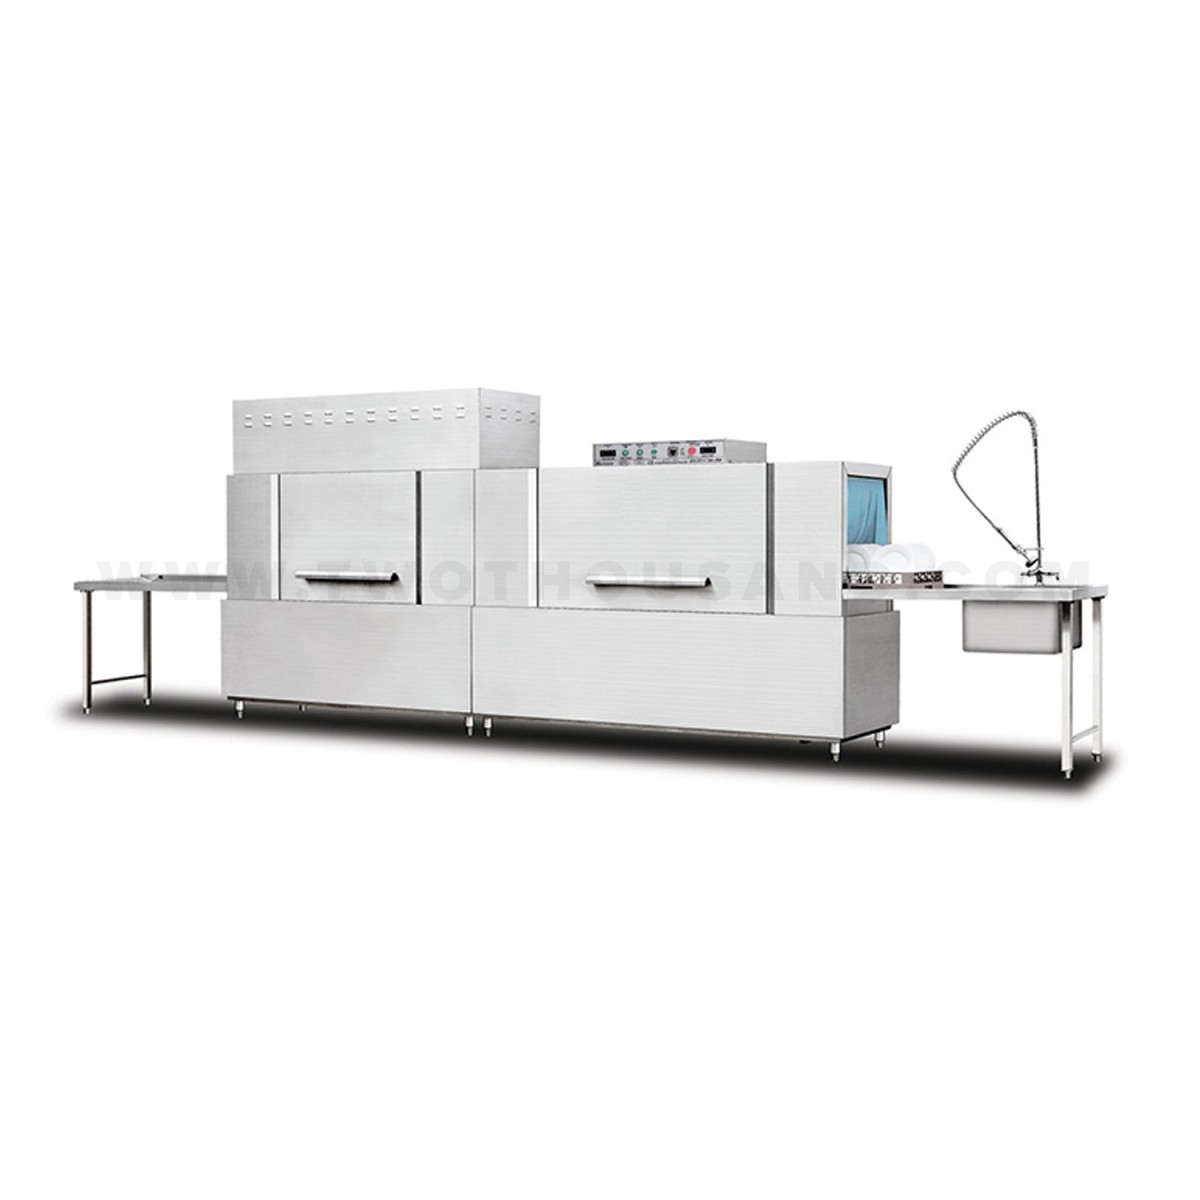 220V 50HZ Commercial Portable Dishwasher / Conveyor Dishwasher With Dryer